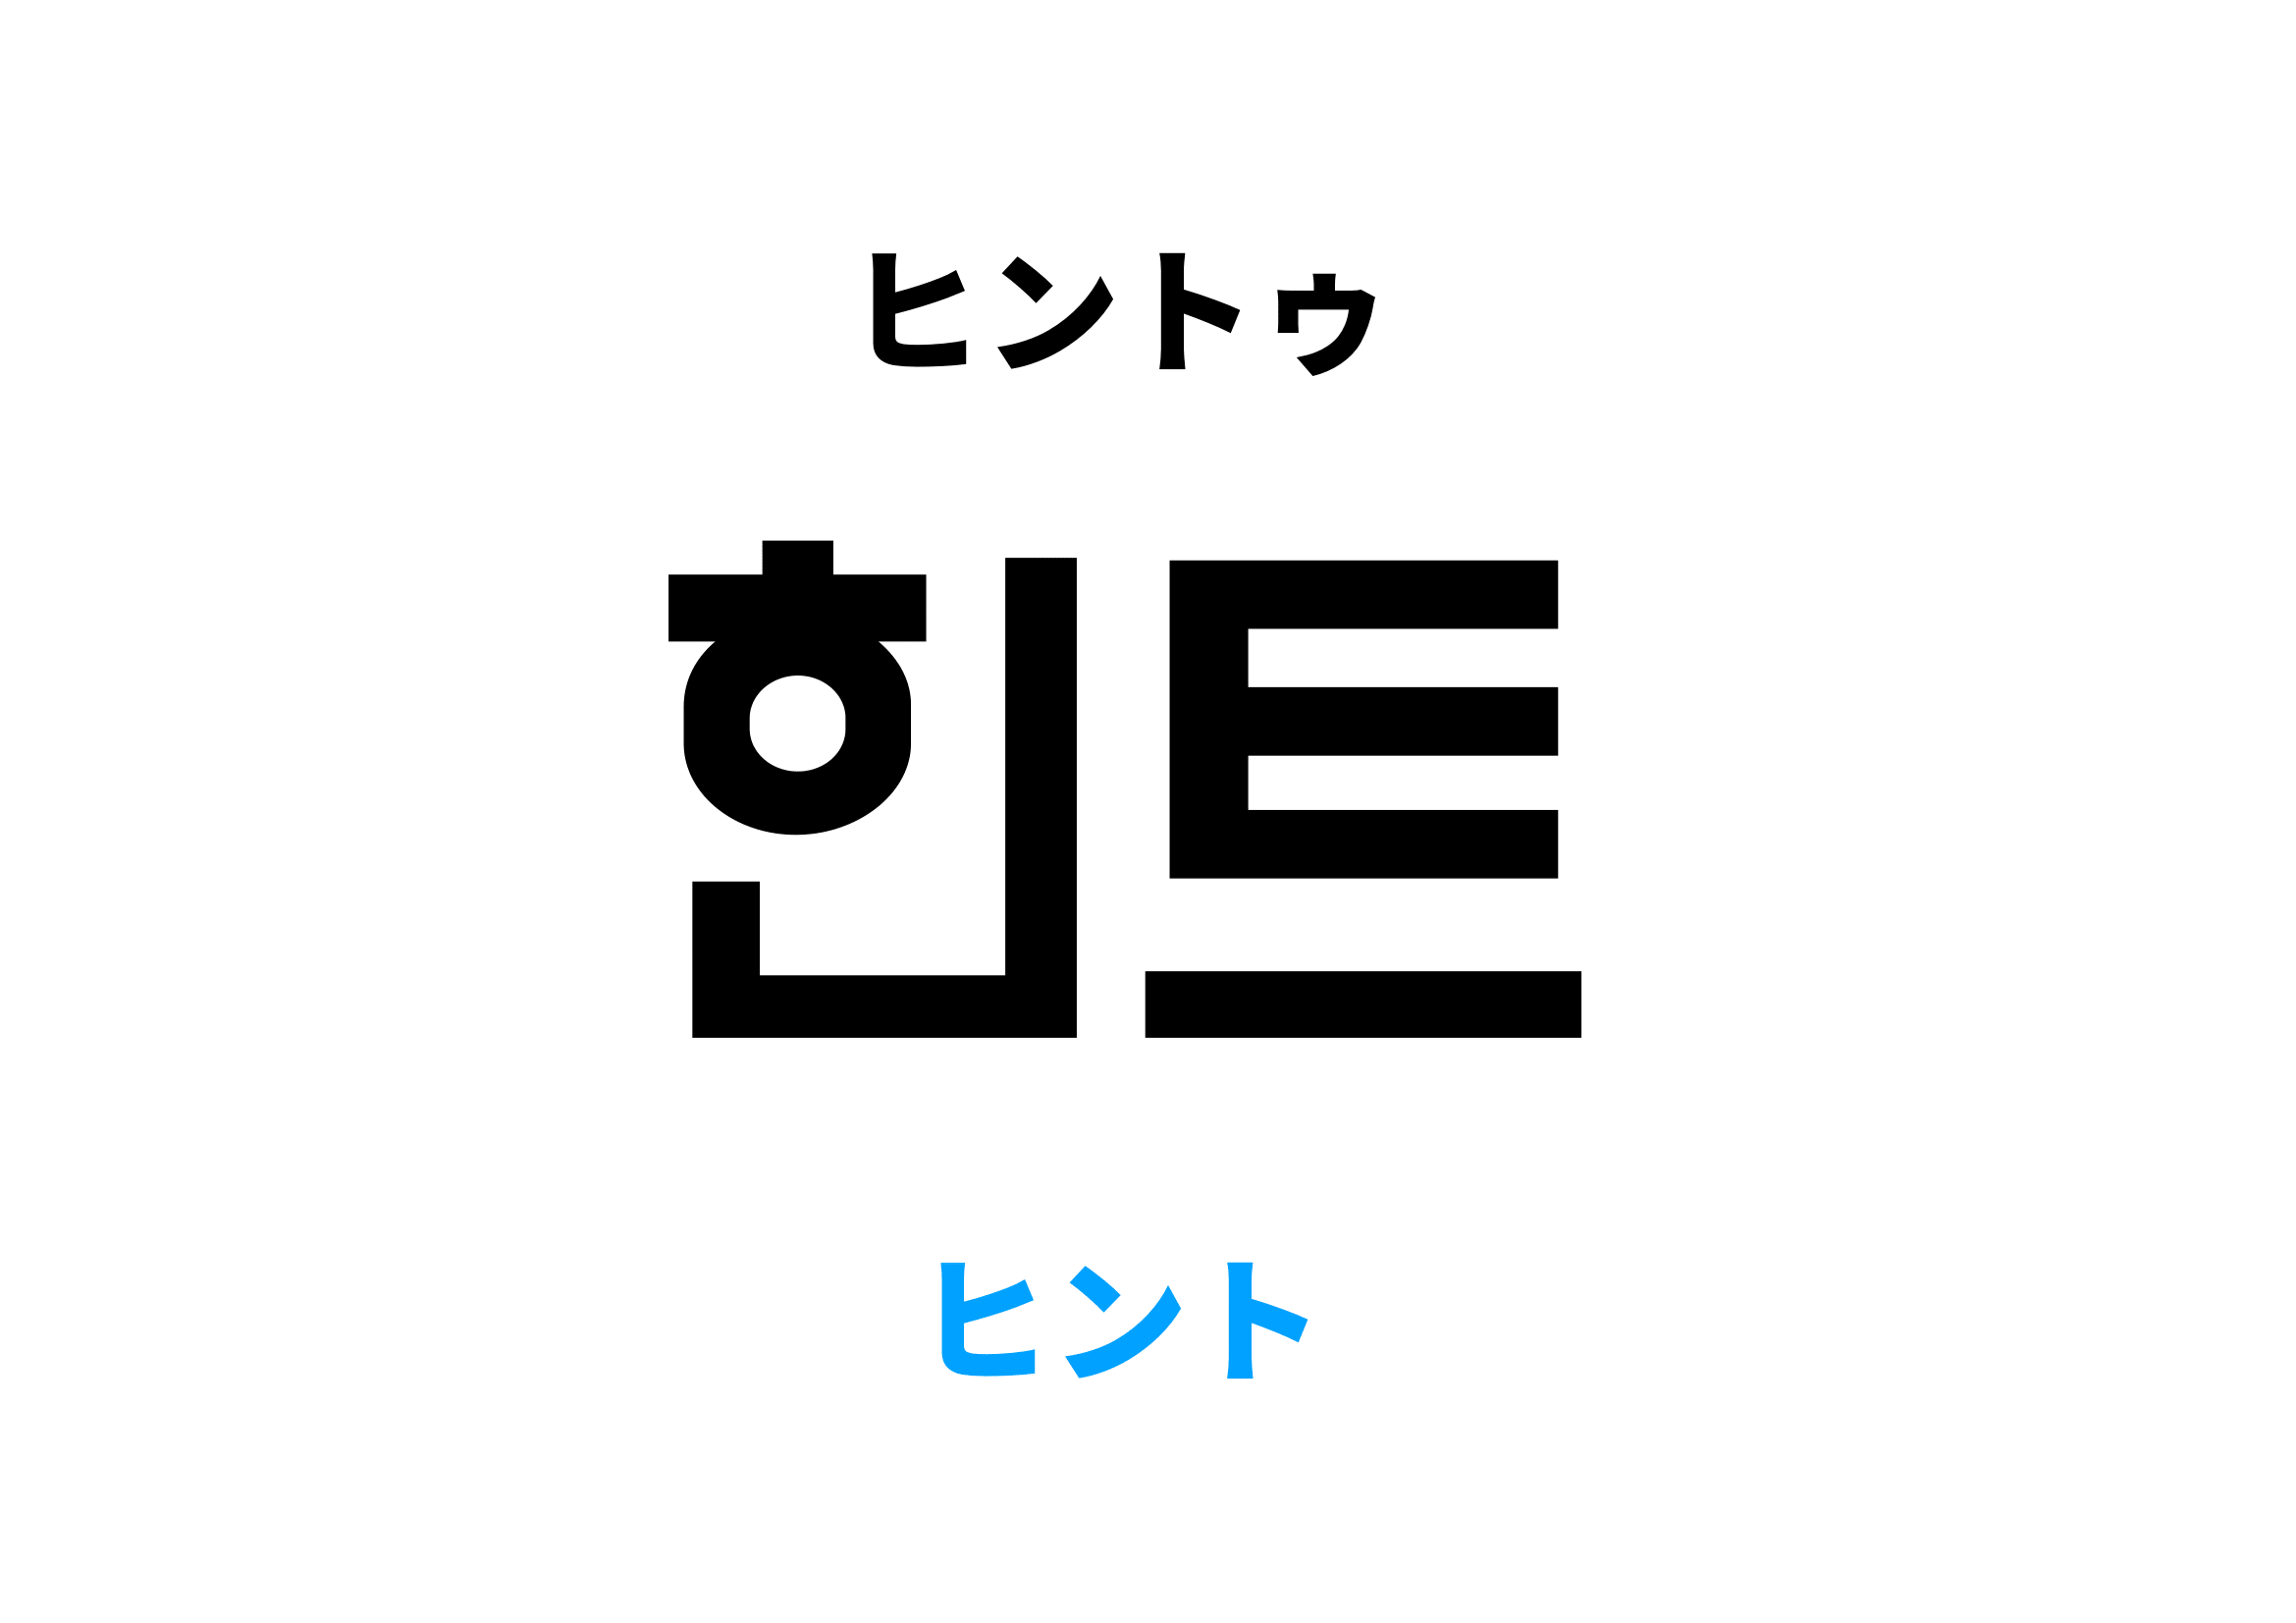 韓国語でヒント,힌트の意味